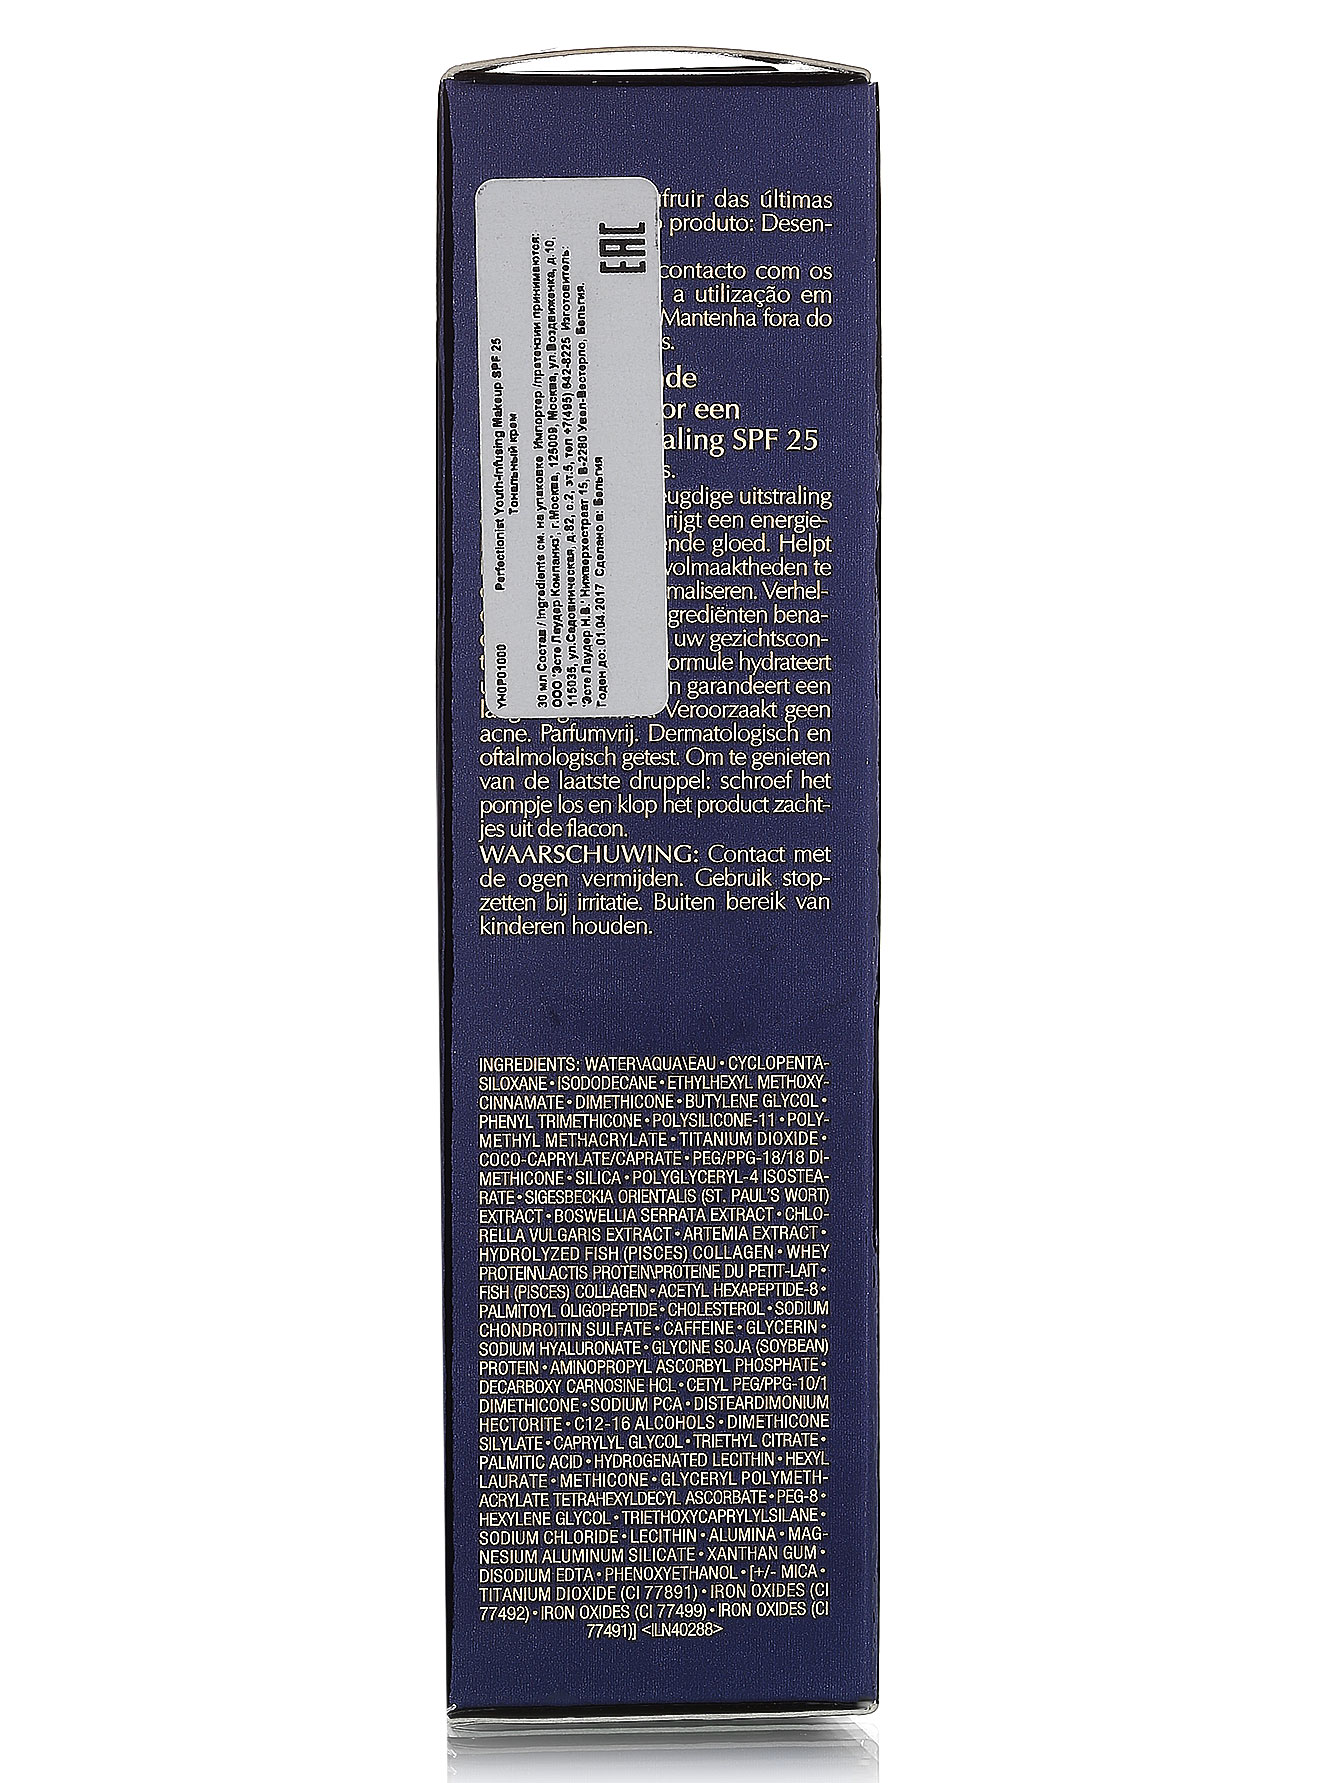  Антивозрастной тональный крем - 2C2 Pale almond, Perfectionist, 30ml - Модель Верх-Низ